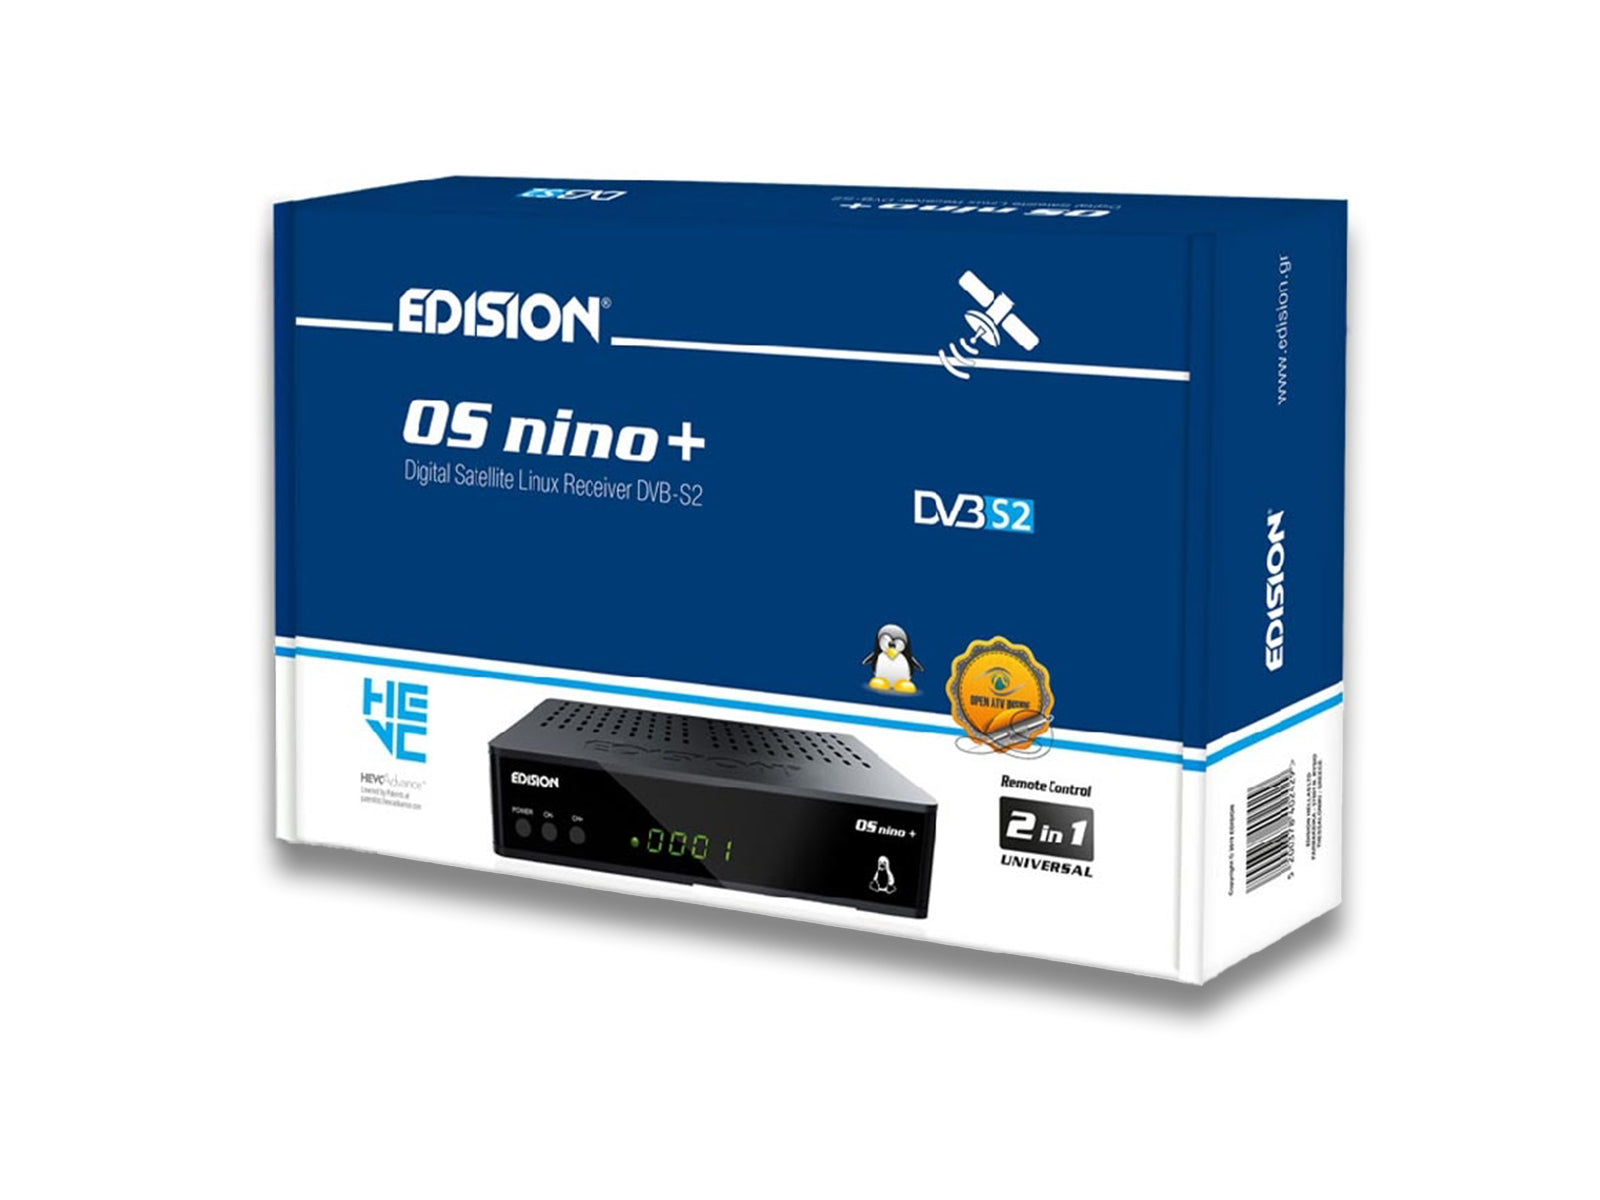 Edision OS Nino Box Front Side